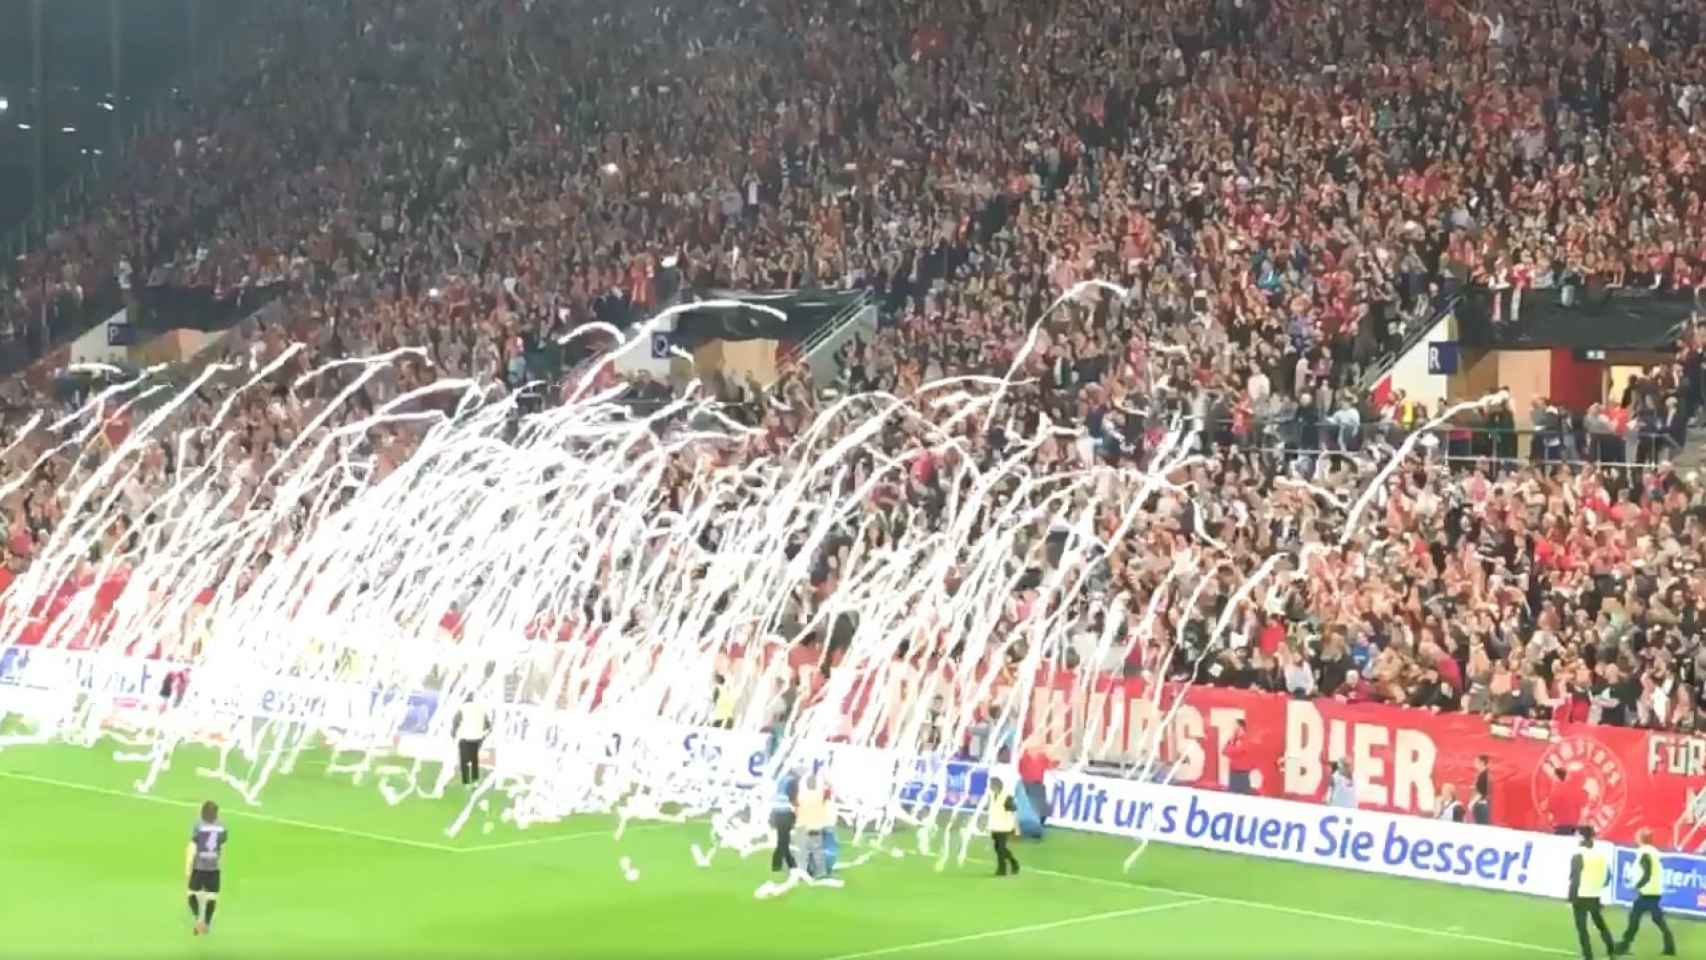 Lanzan rollos de papel en el partido entre el Mainz y el Friburgo